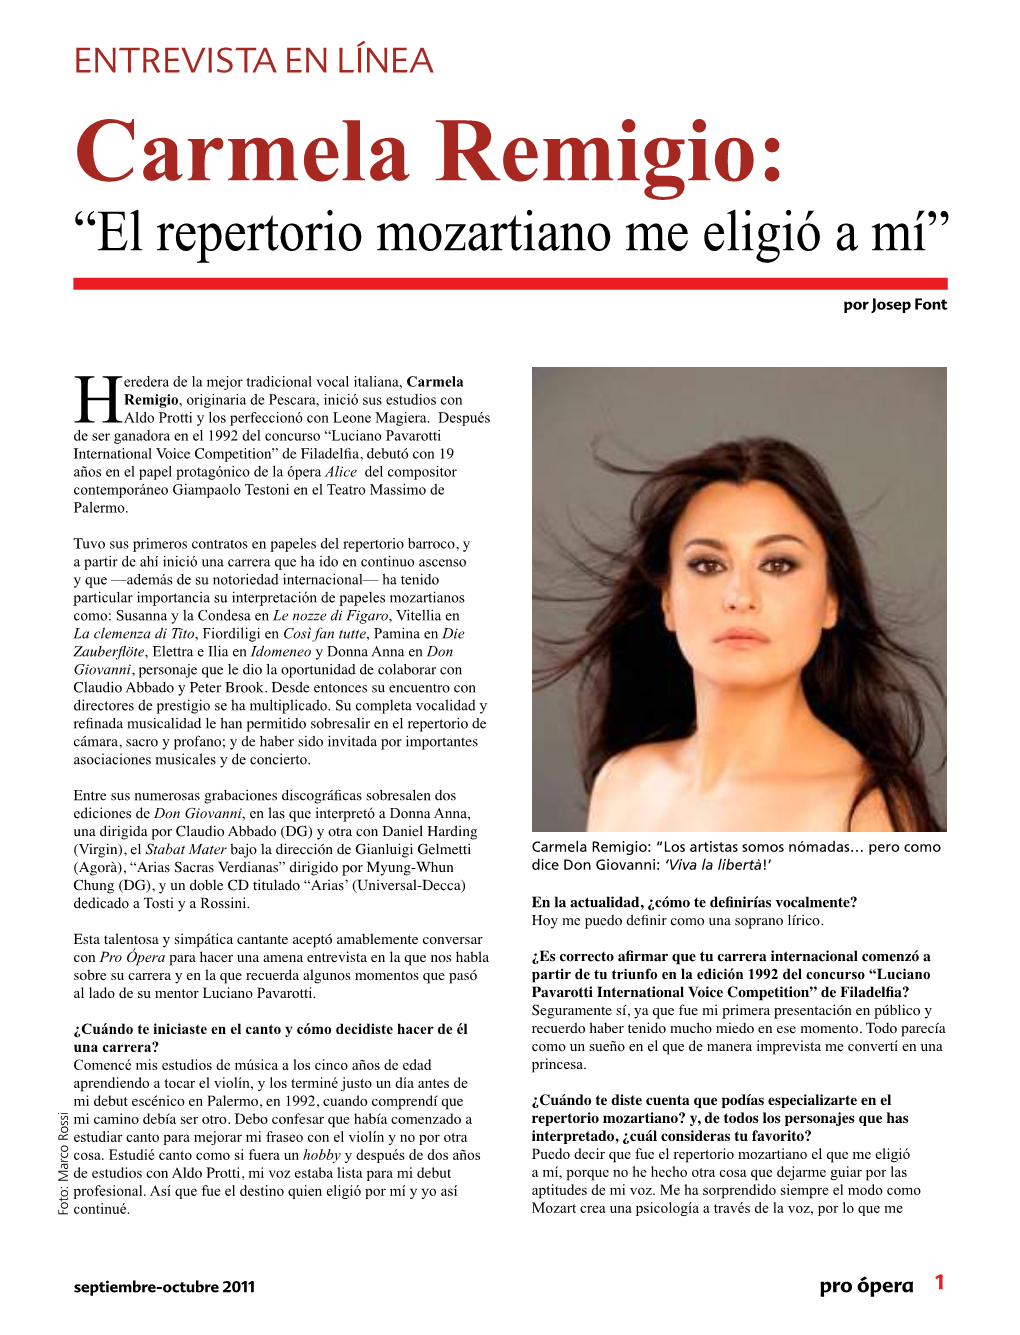 Carmela Remigio: “El Repertorio Mozartiano Me Eligió a Mí”